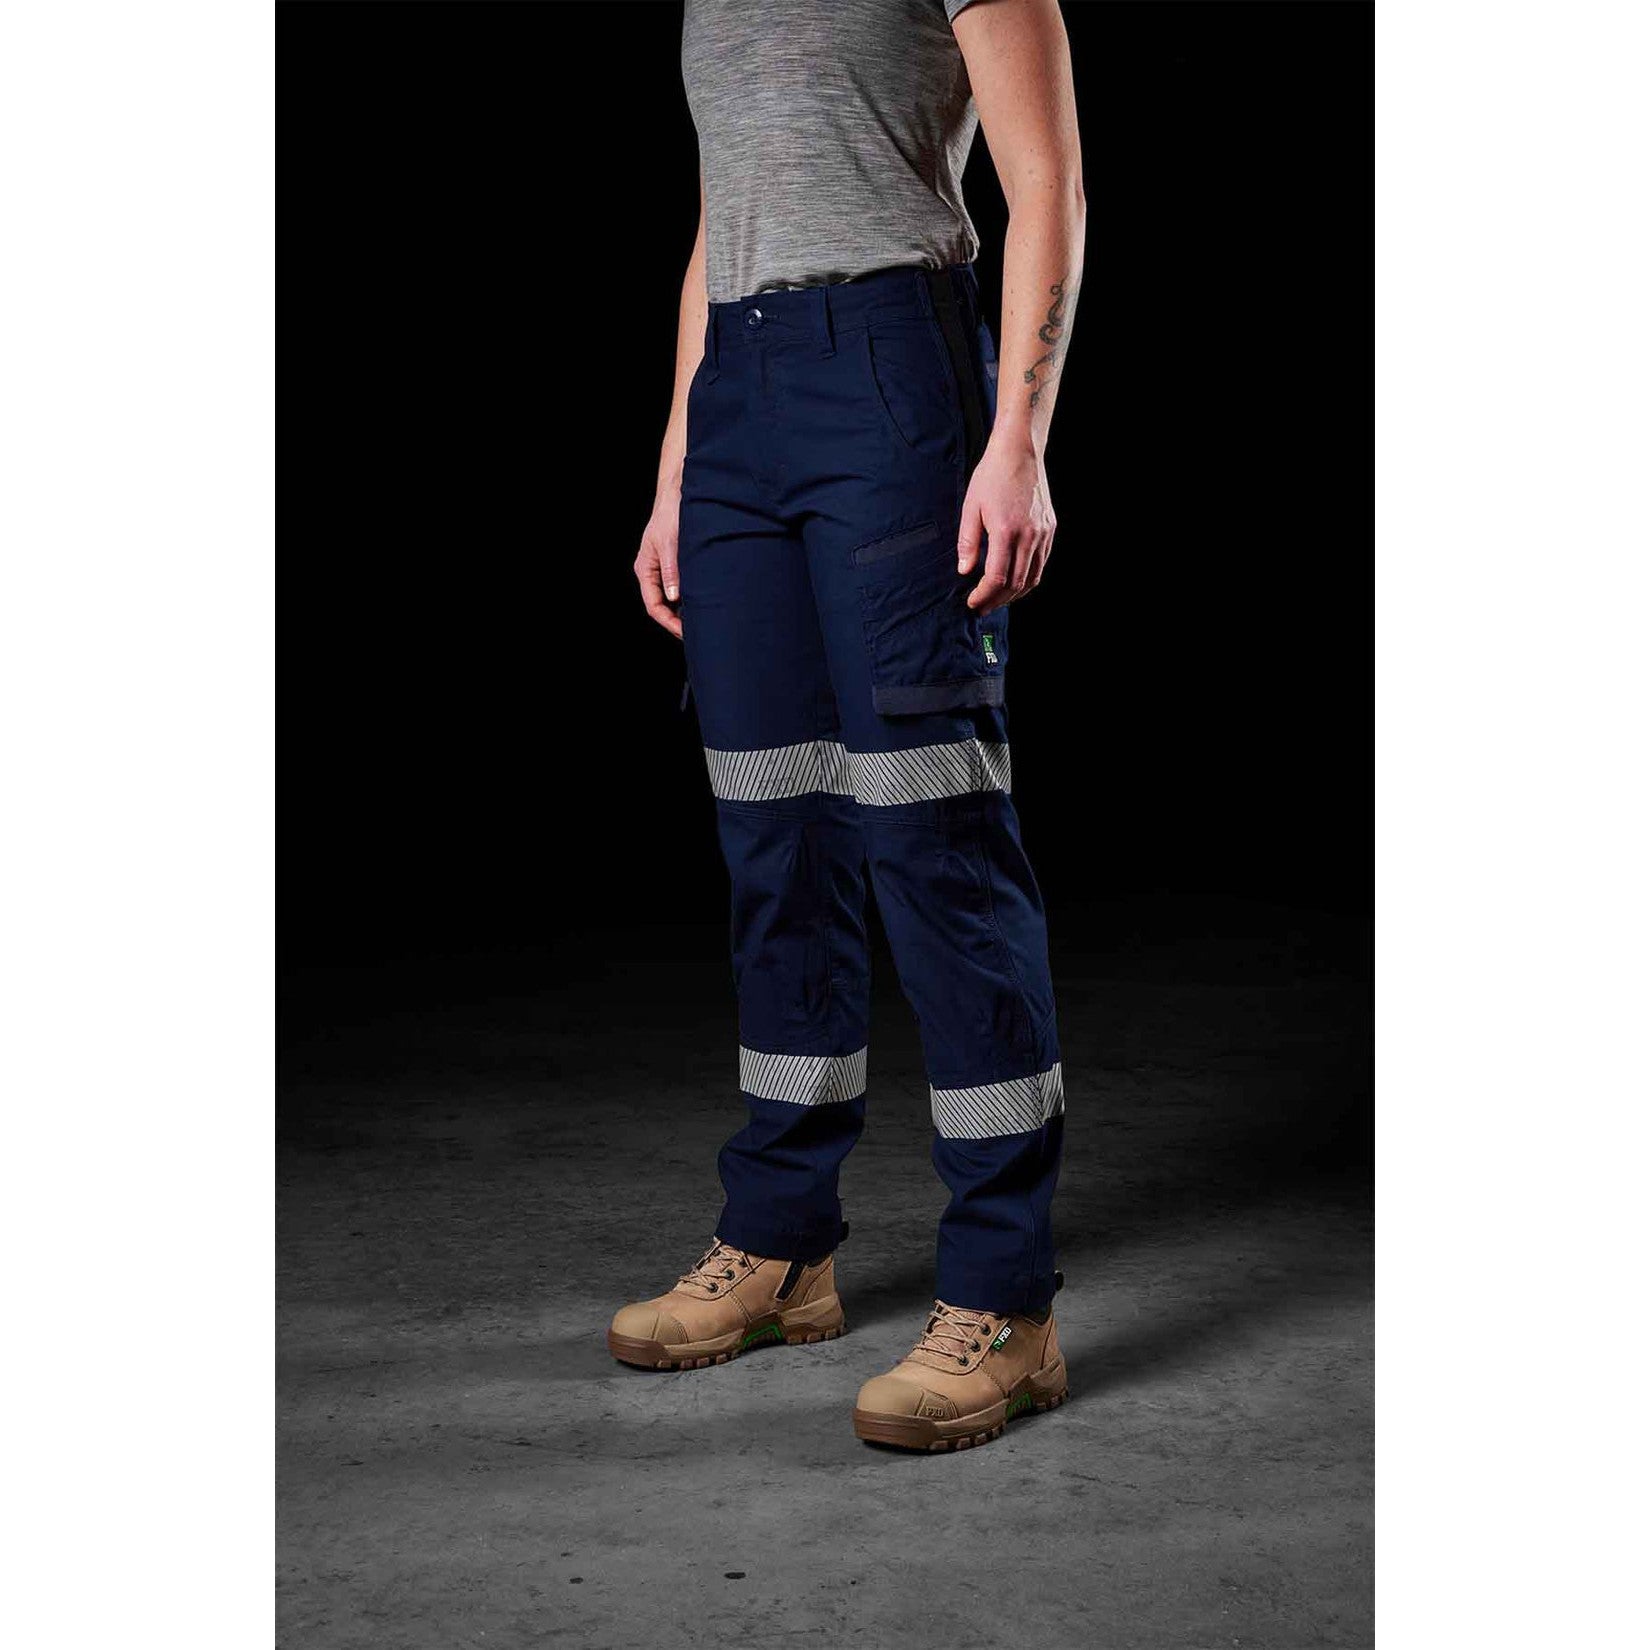 Buy Taped cuffed womens work pant by ELWD Workwear online - she wear